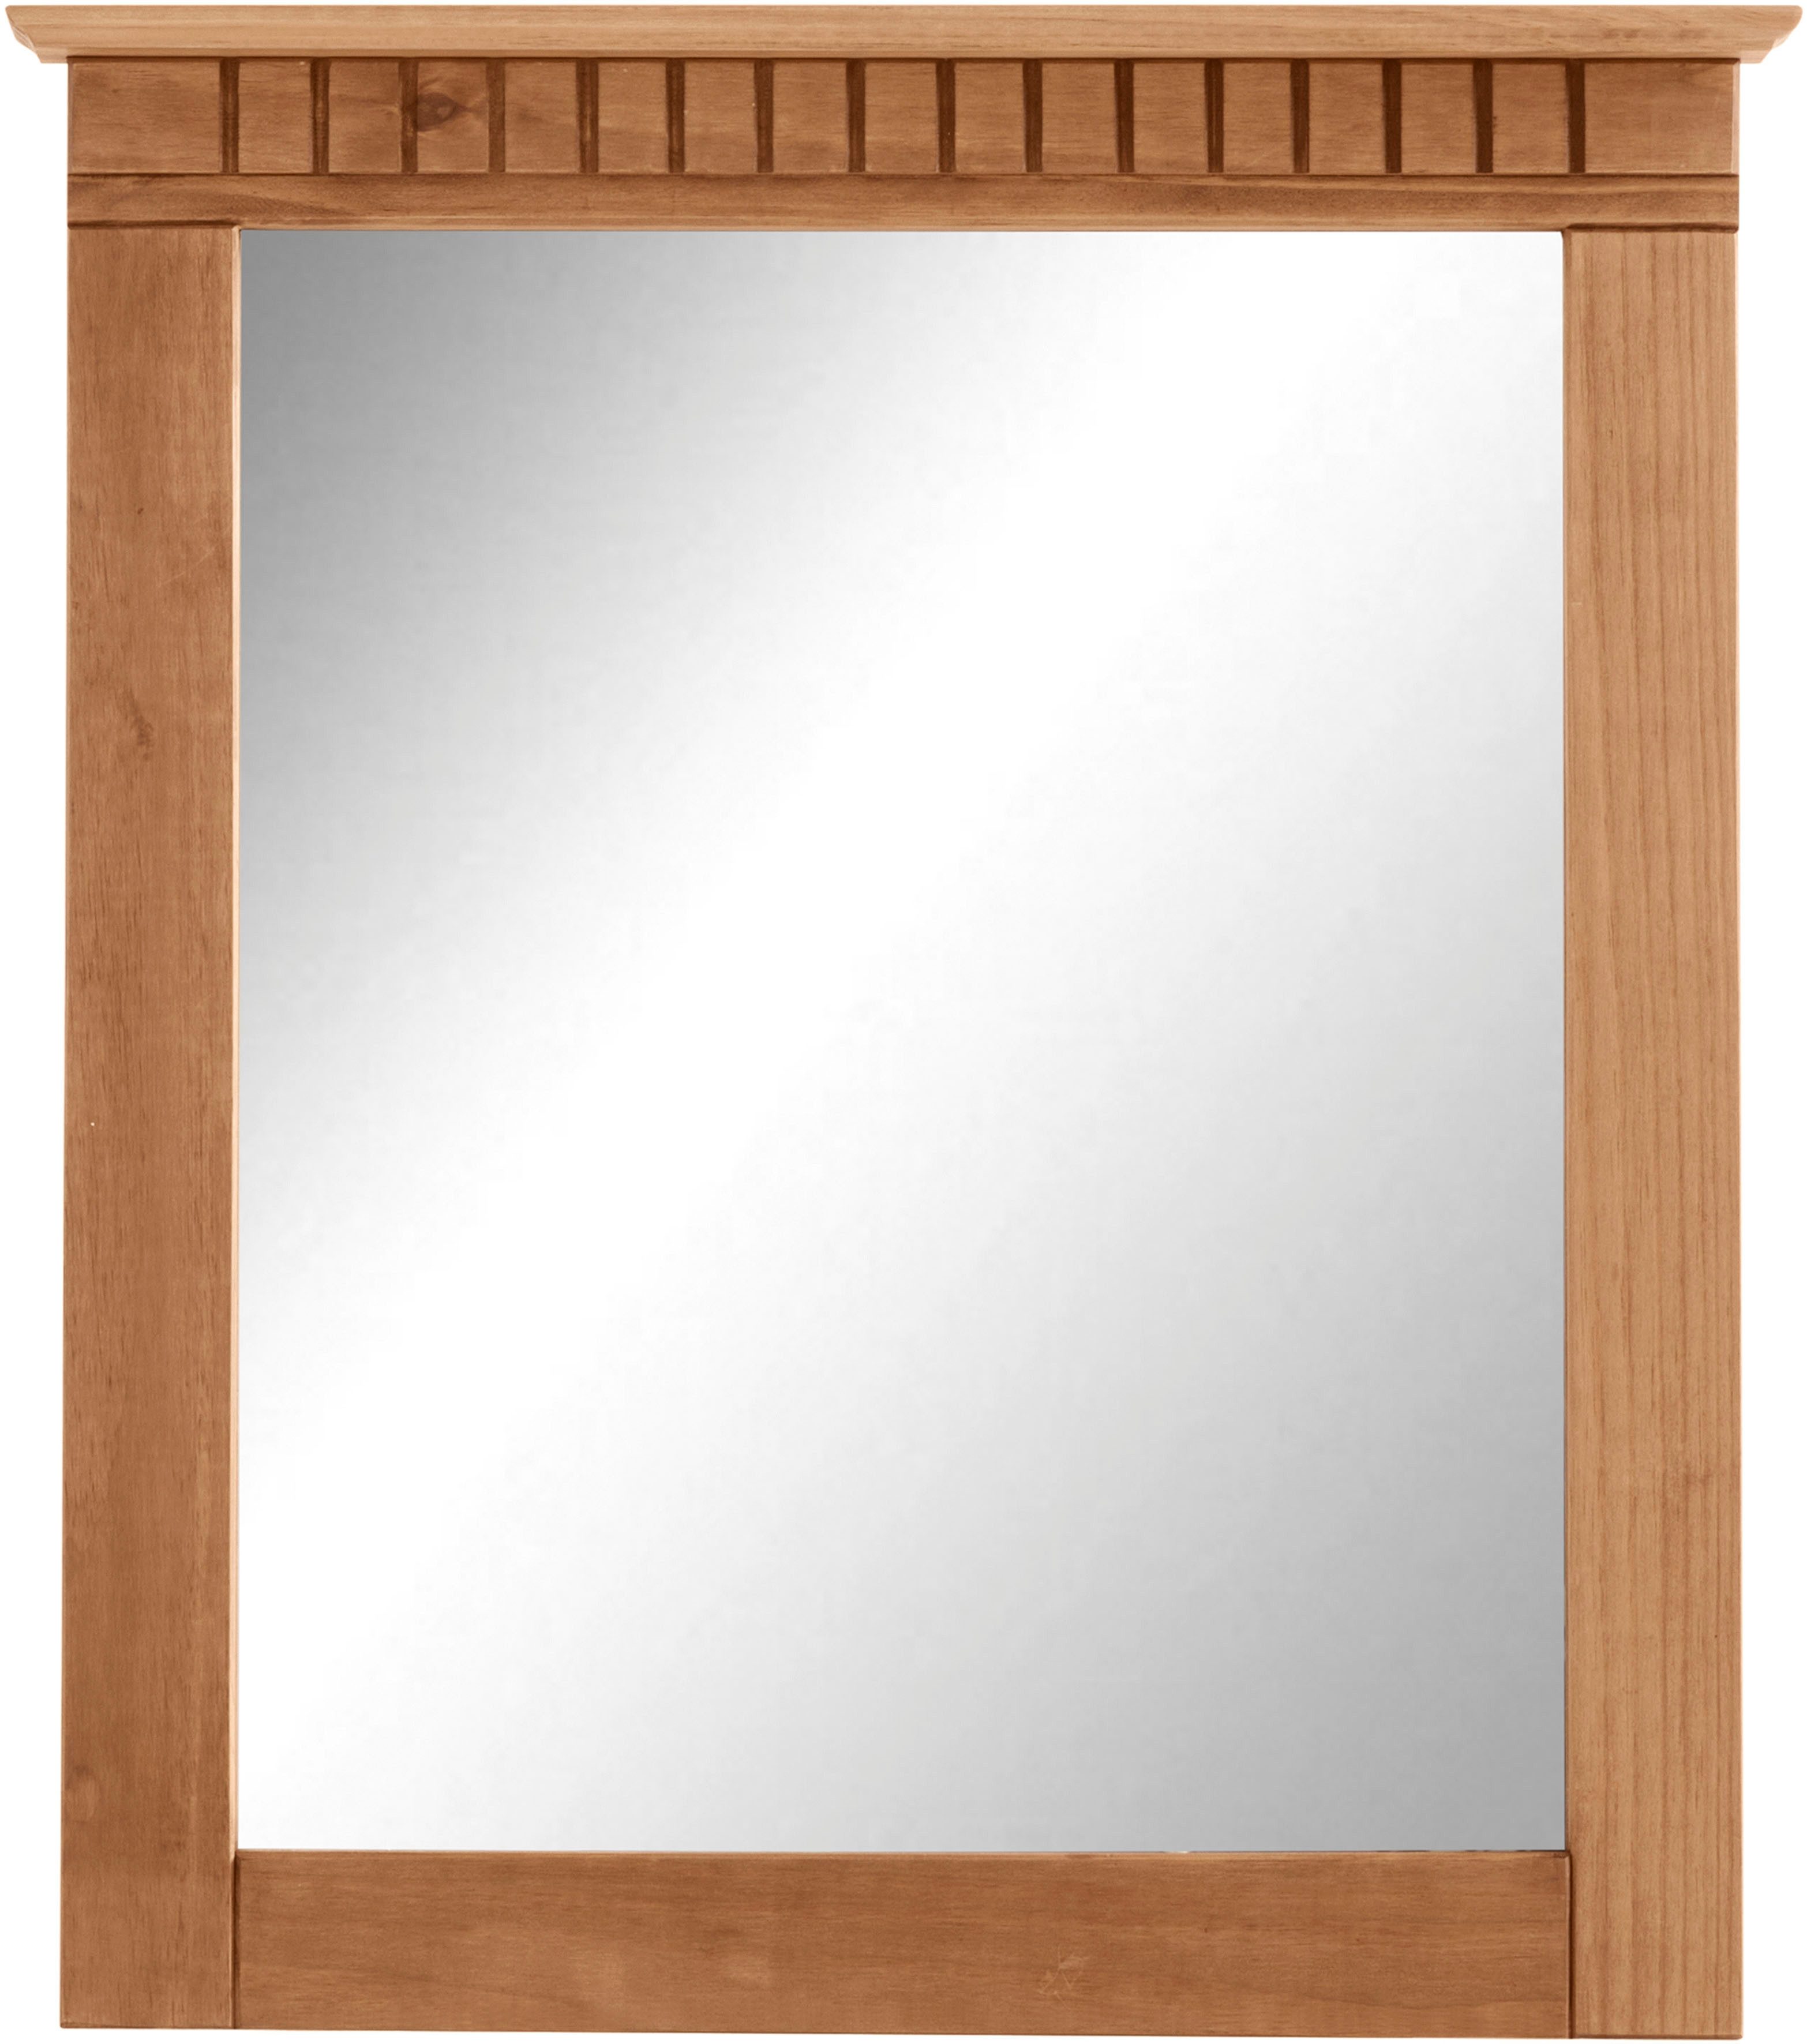 Home affaire Garderobenspiegel Lisa, mit dekorativen Fräsungen, Spiegelfläche ca. 44 x 56 cm